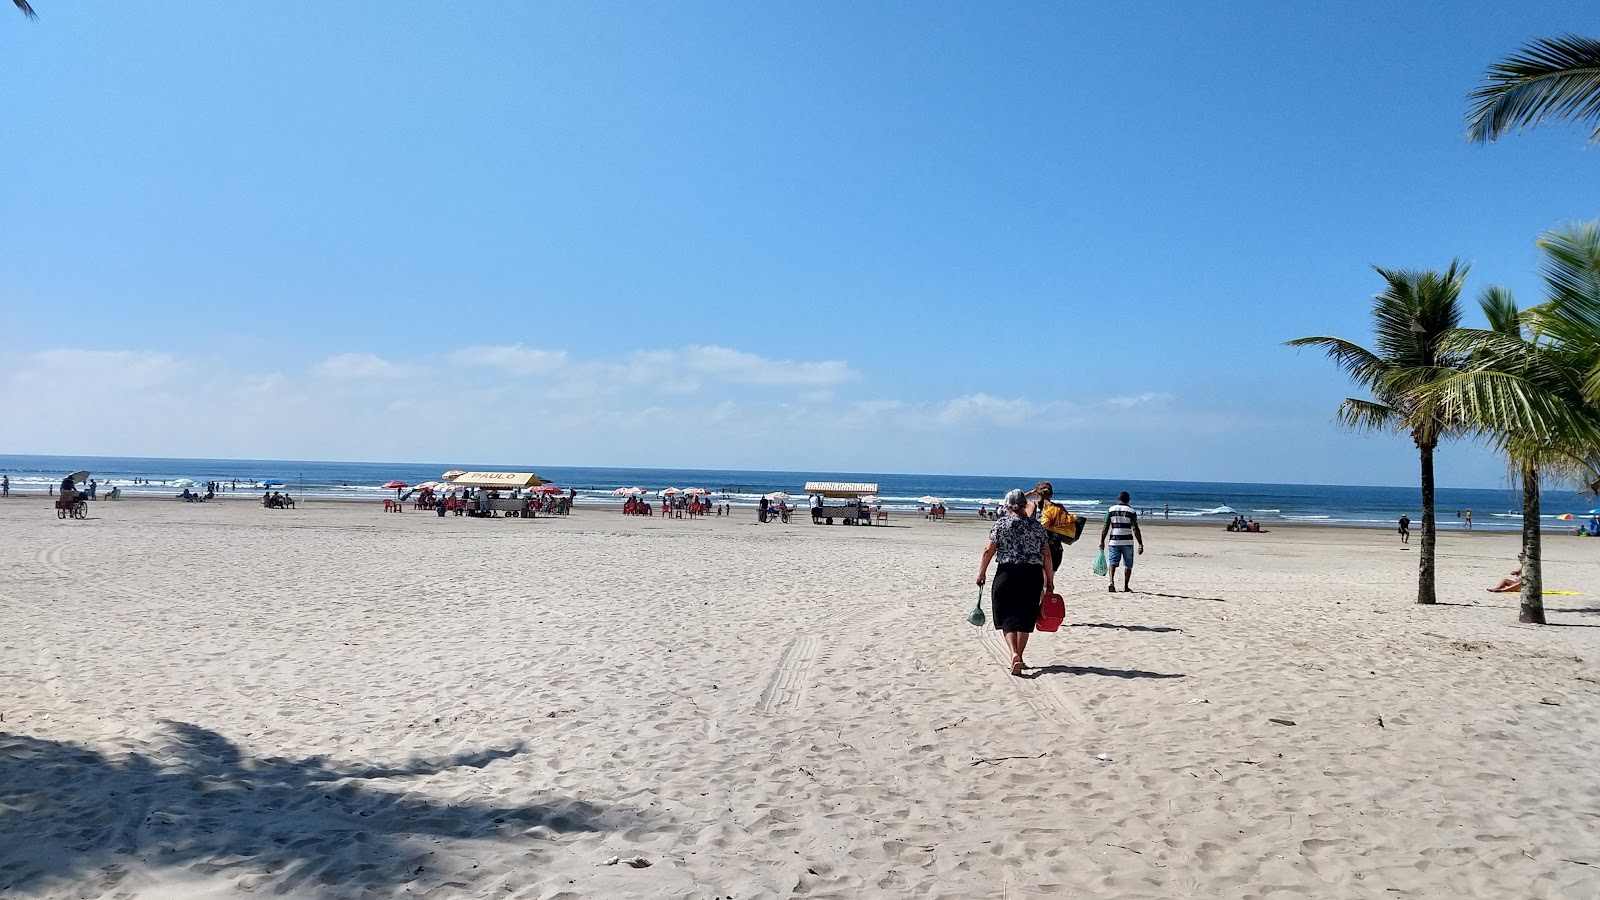 Praia dos Milionarios'in fotoğrafı çok temiz temizlik seviyesi ile